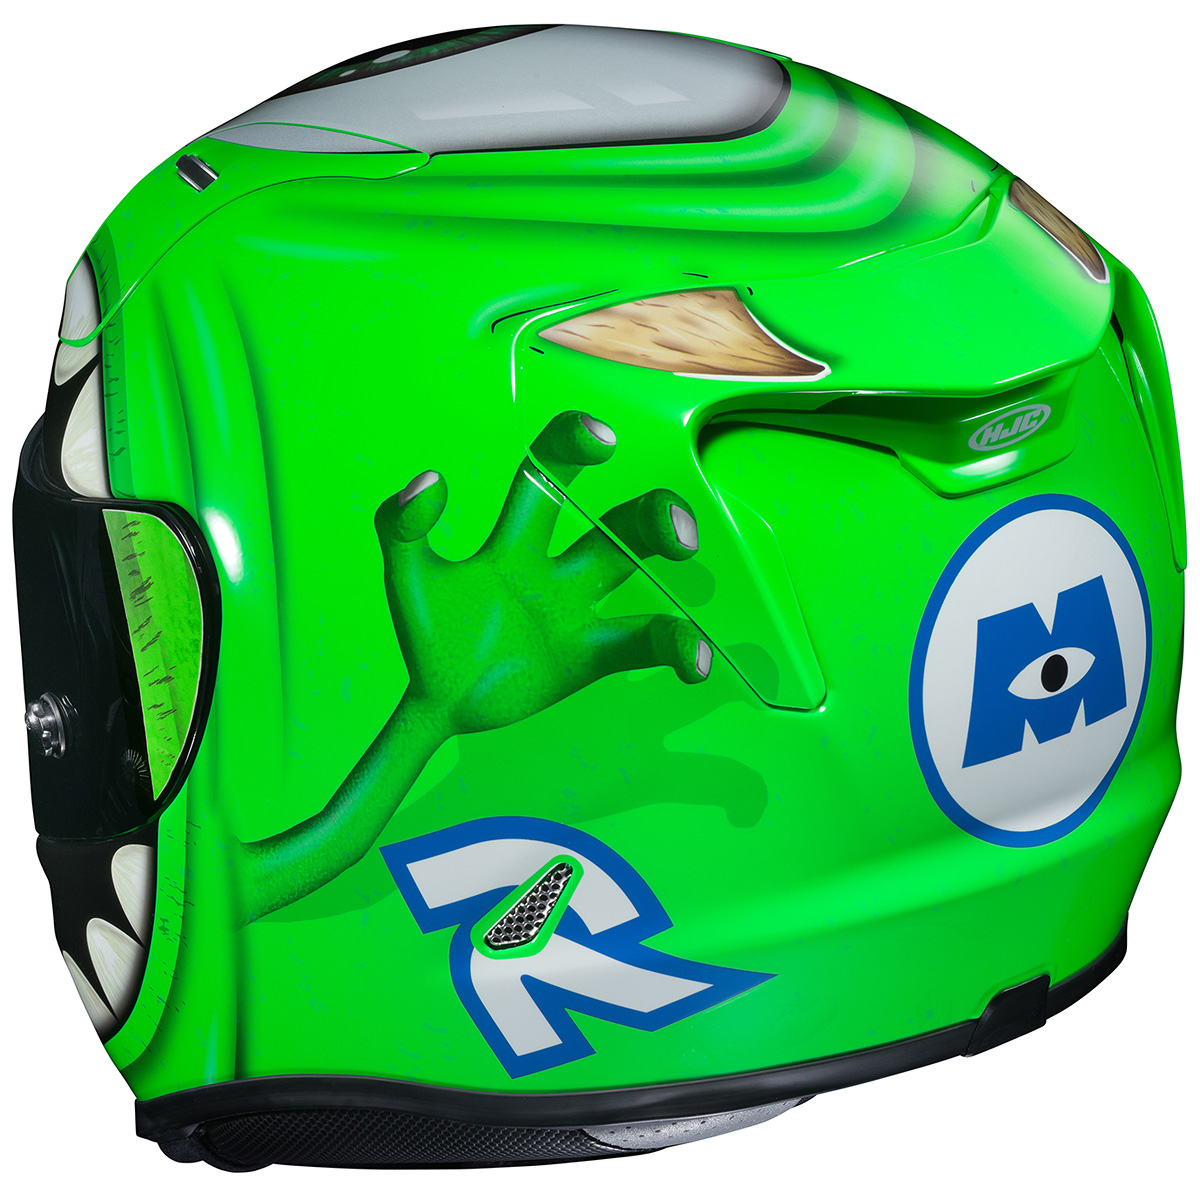 鮮やかなライムグリーンと目玉が特徴! HJCヘルメットにマイク 